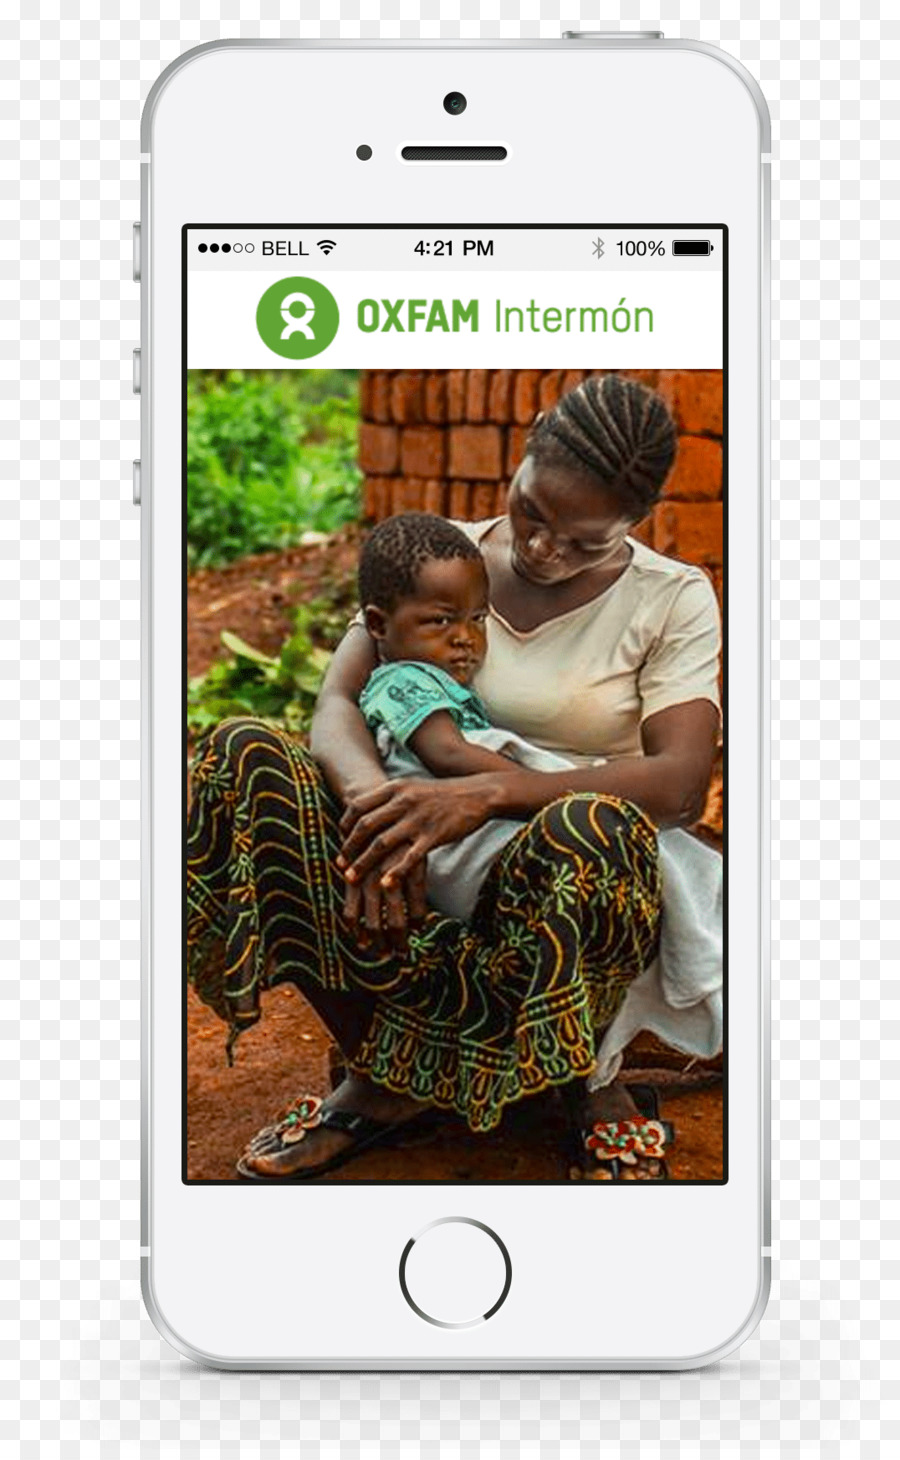 Bambino Prodotto Mobile app iPhone Cellulari - oxfam